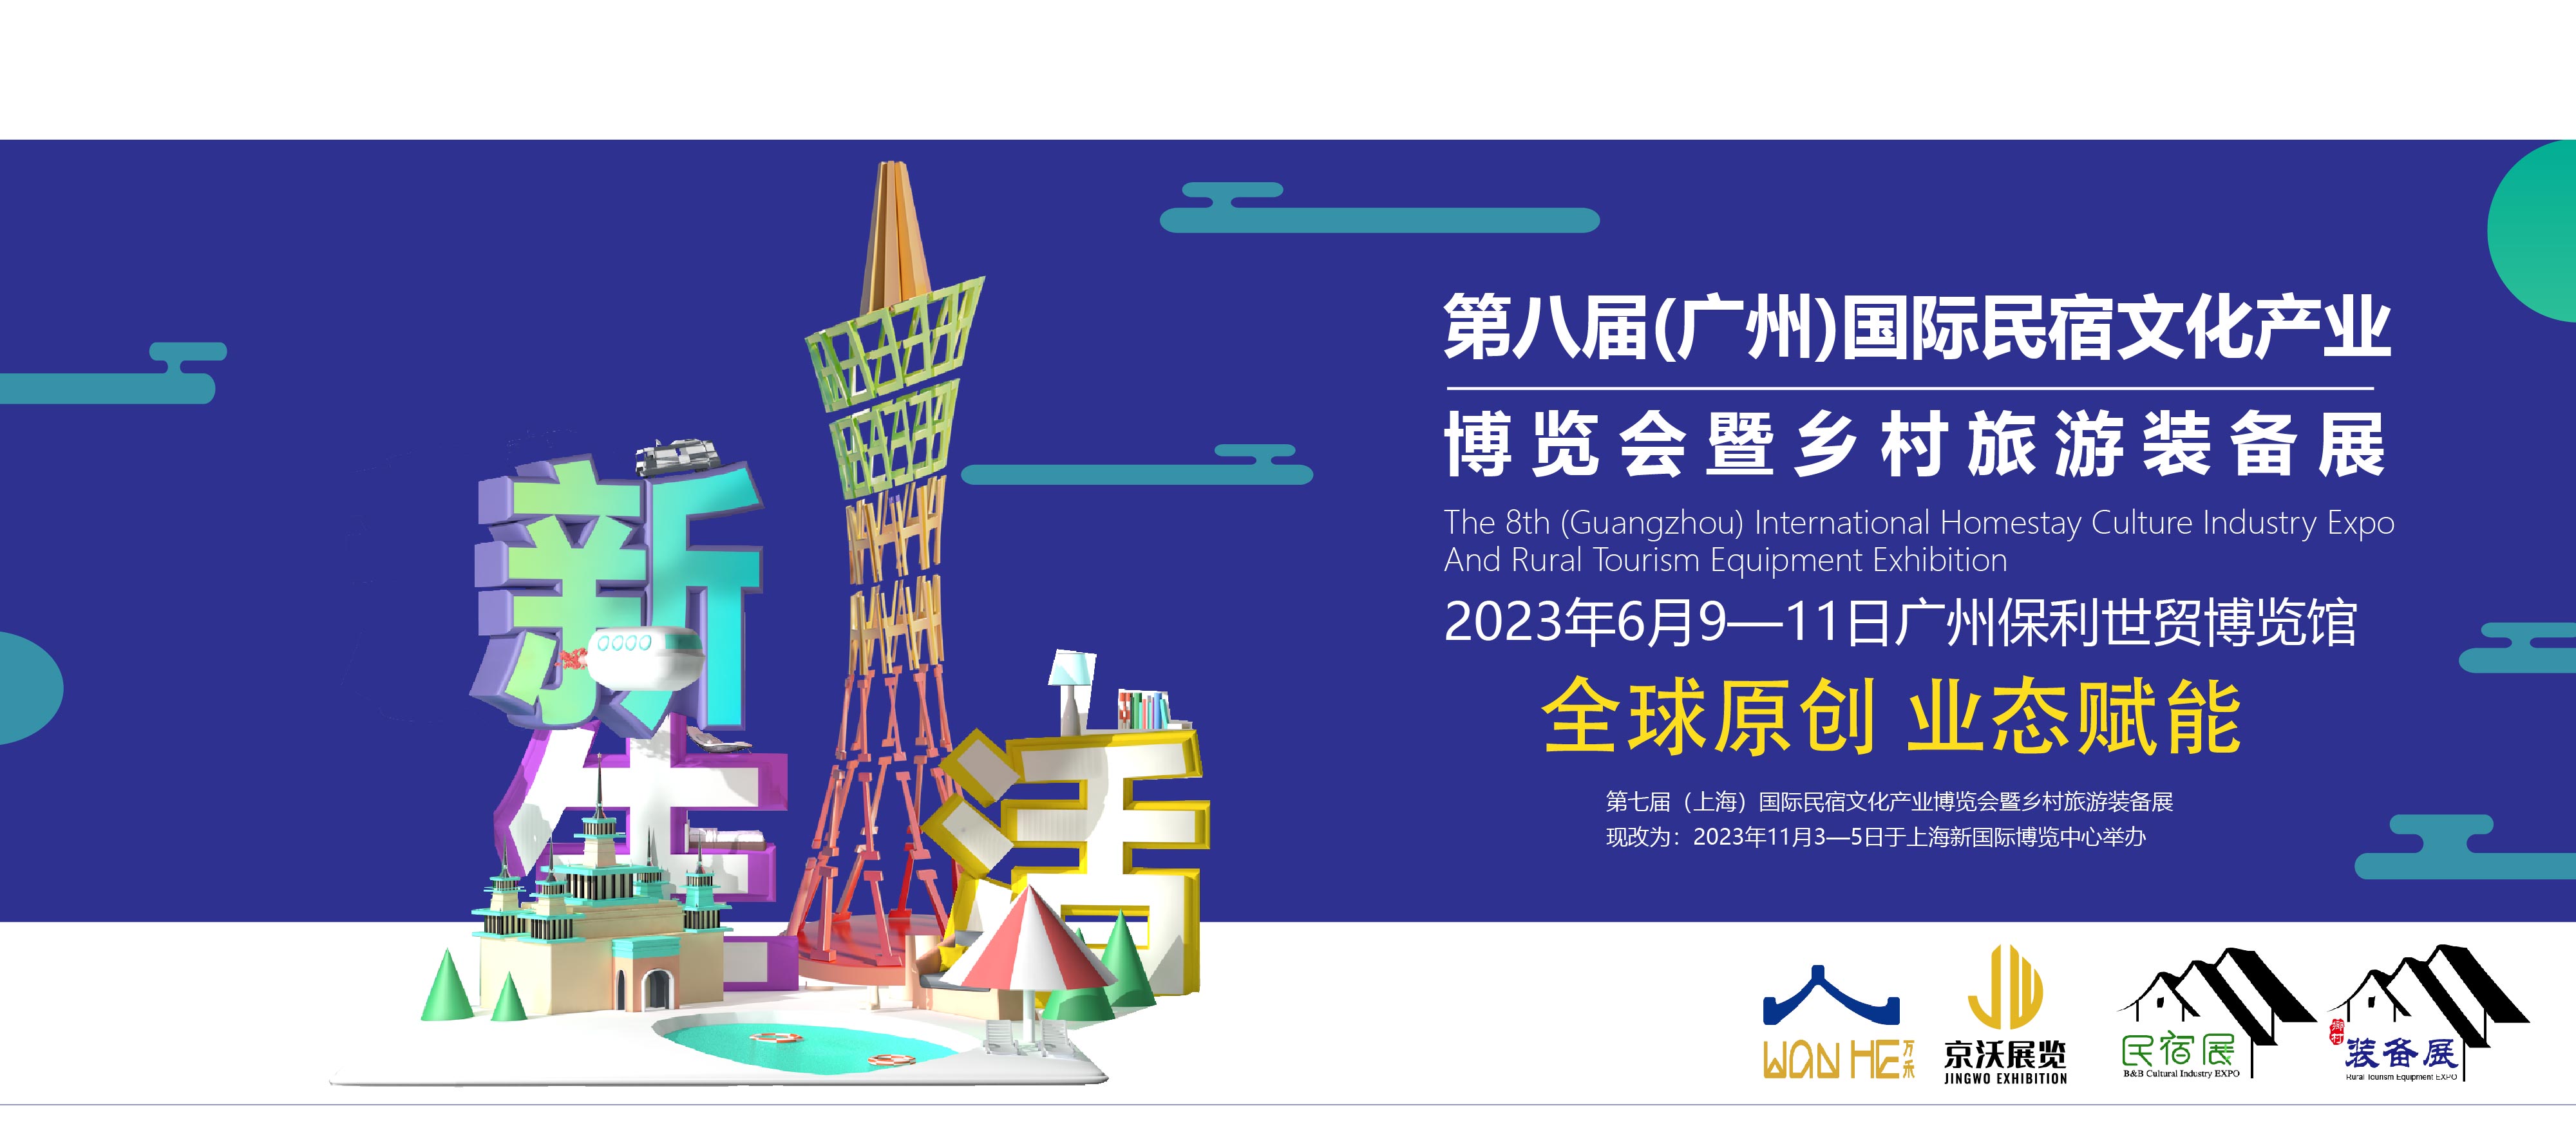 第八届（广州）民宿文化产业博览会暨乡村旅游装备展